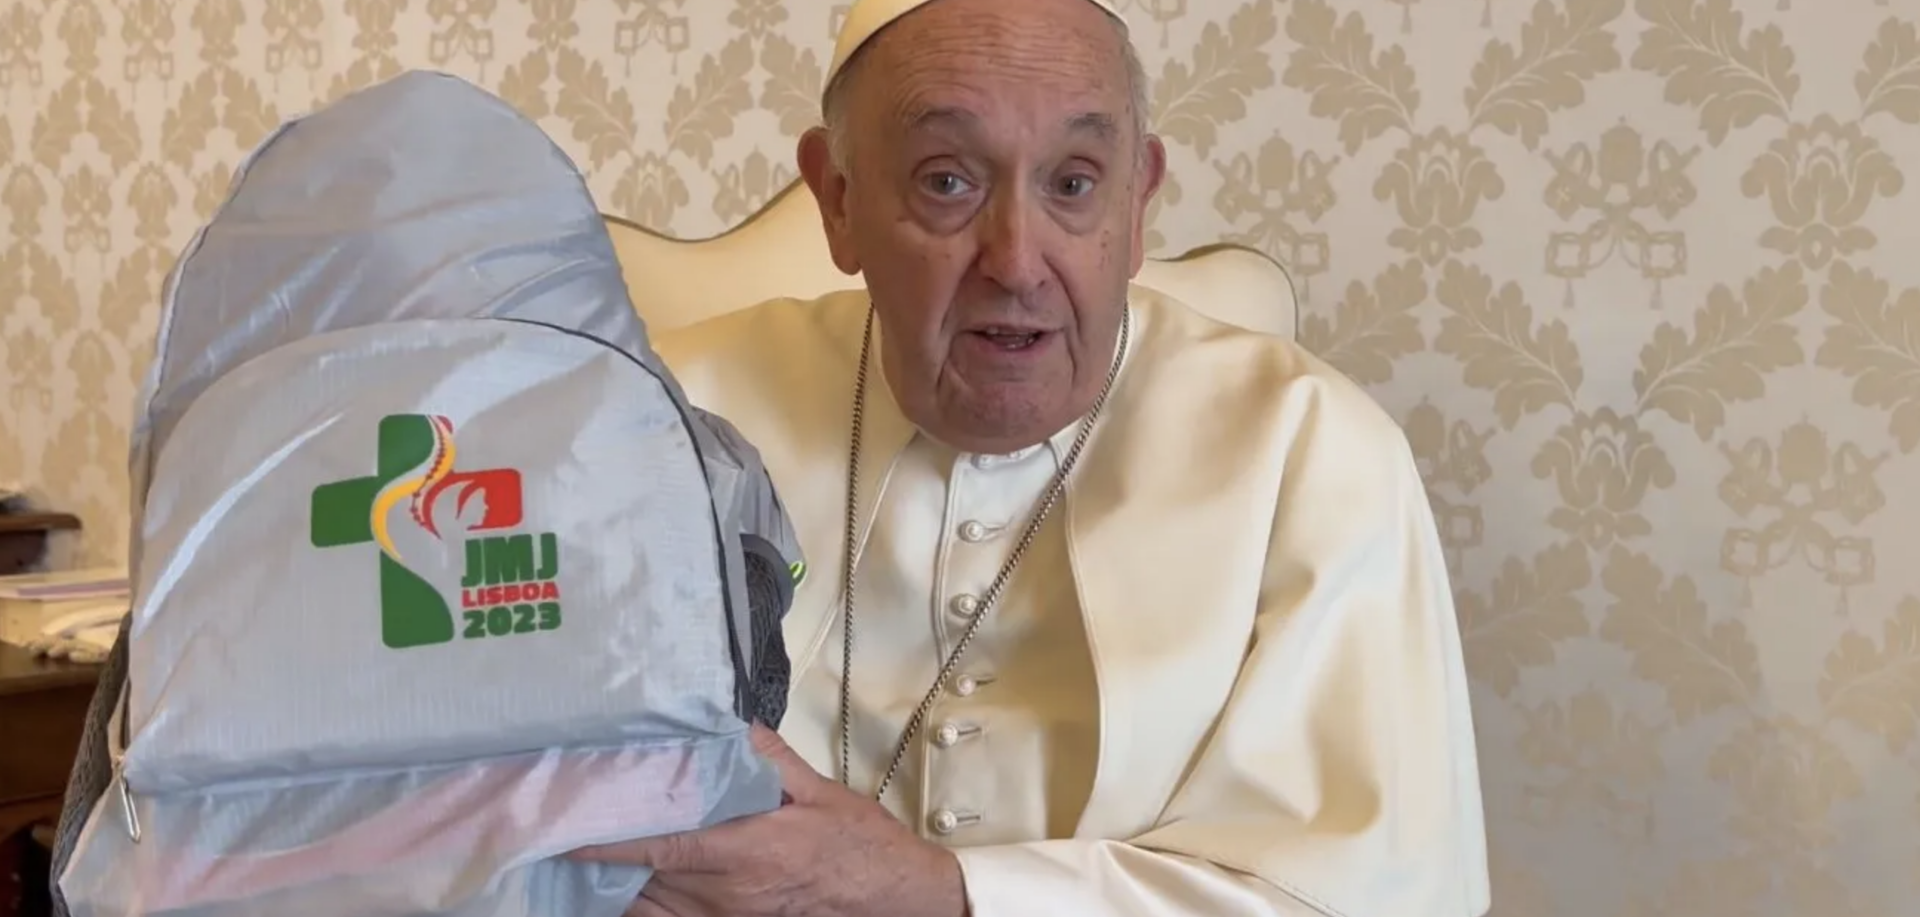 Le pape François a déjà préparé son sac pour aller aux JMJ | capture d'écran Vatican Media